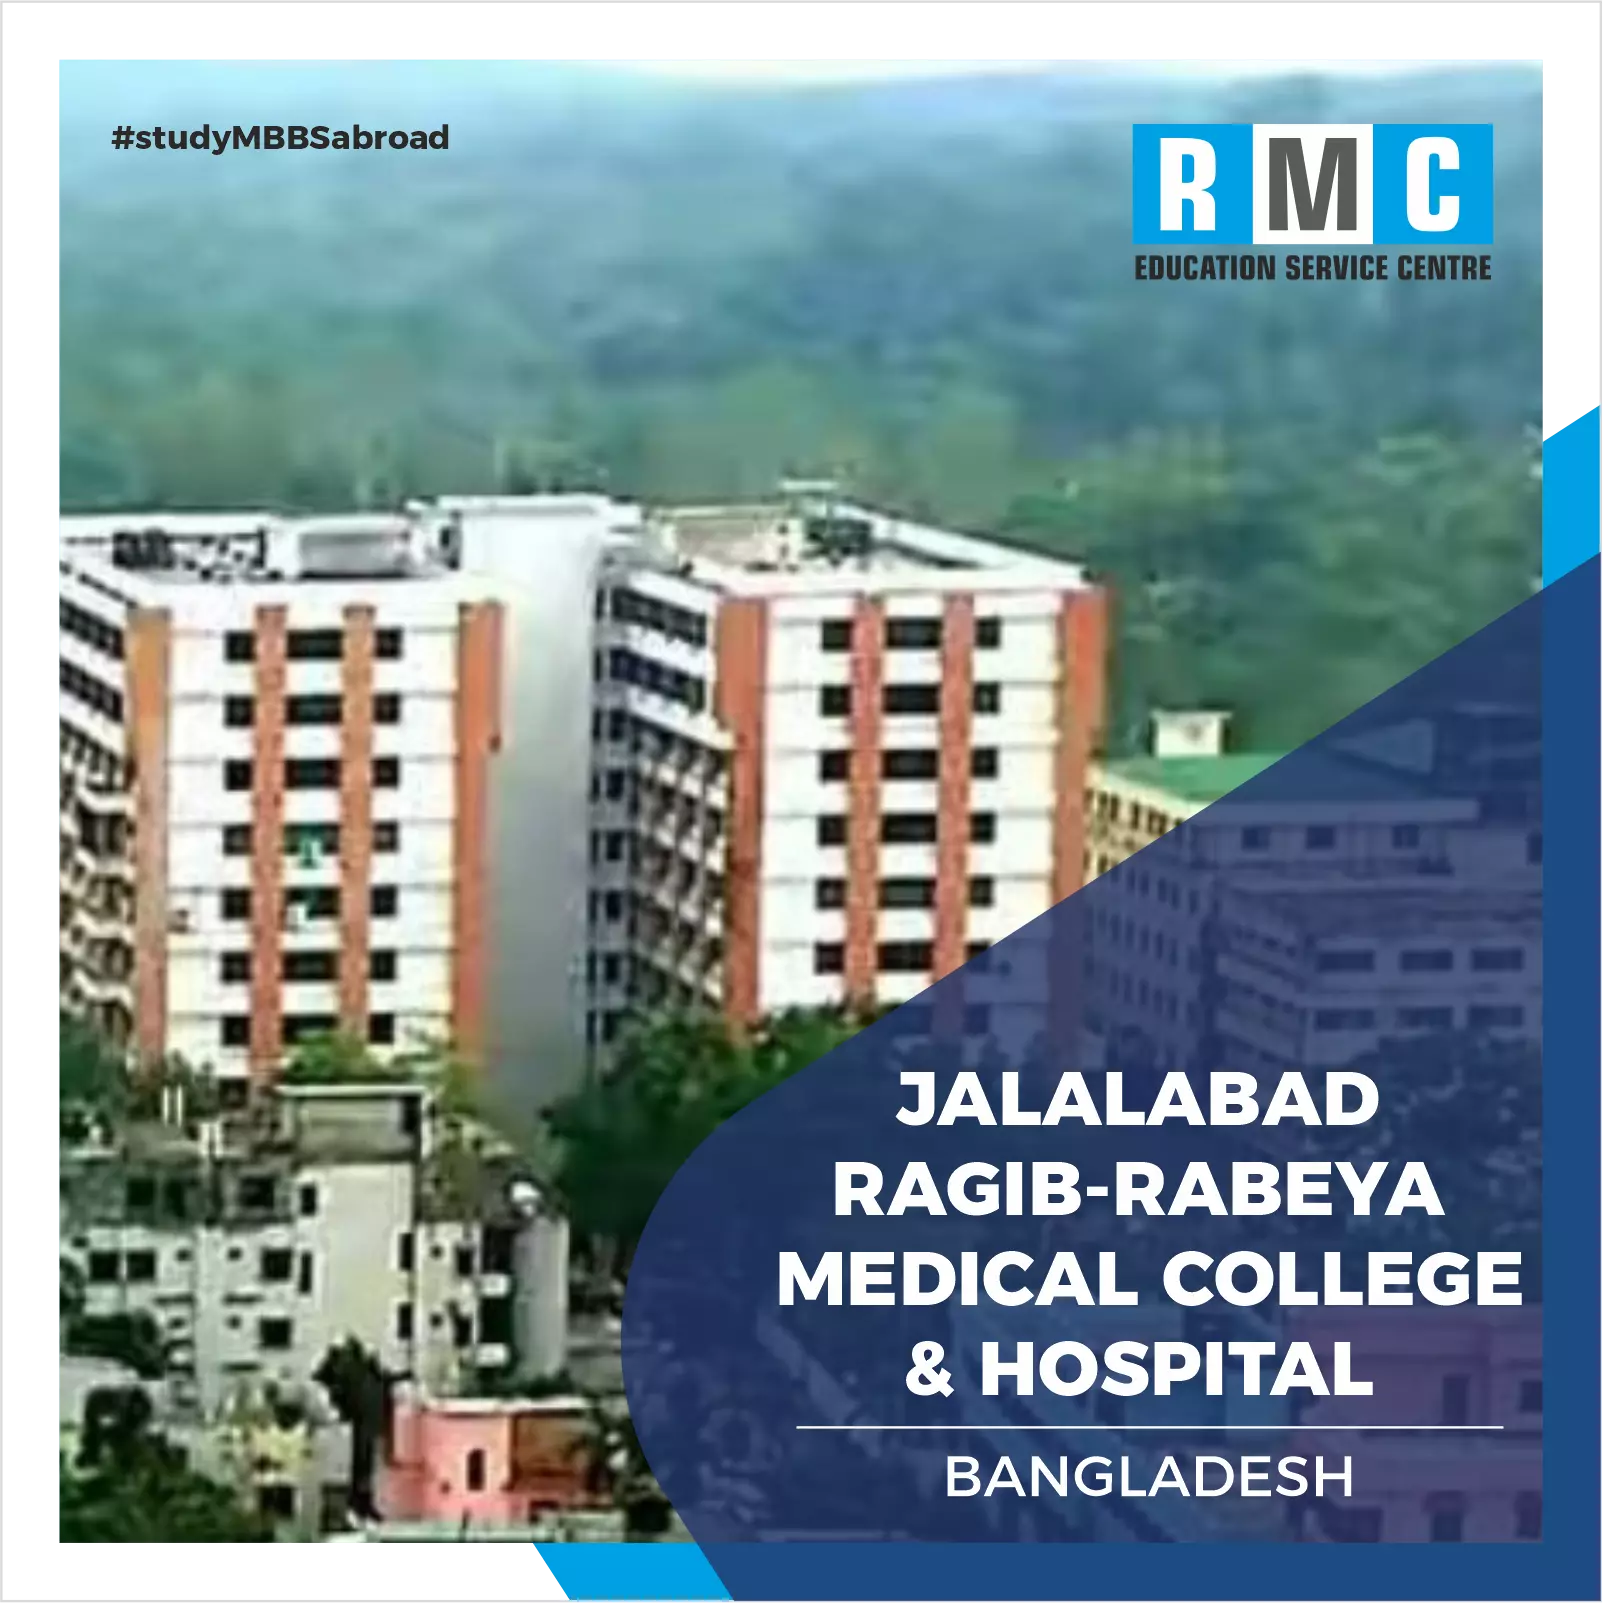 Jalalabad Ragib-Rabeya Medical College & Hospital